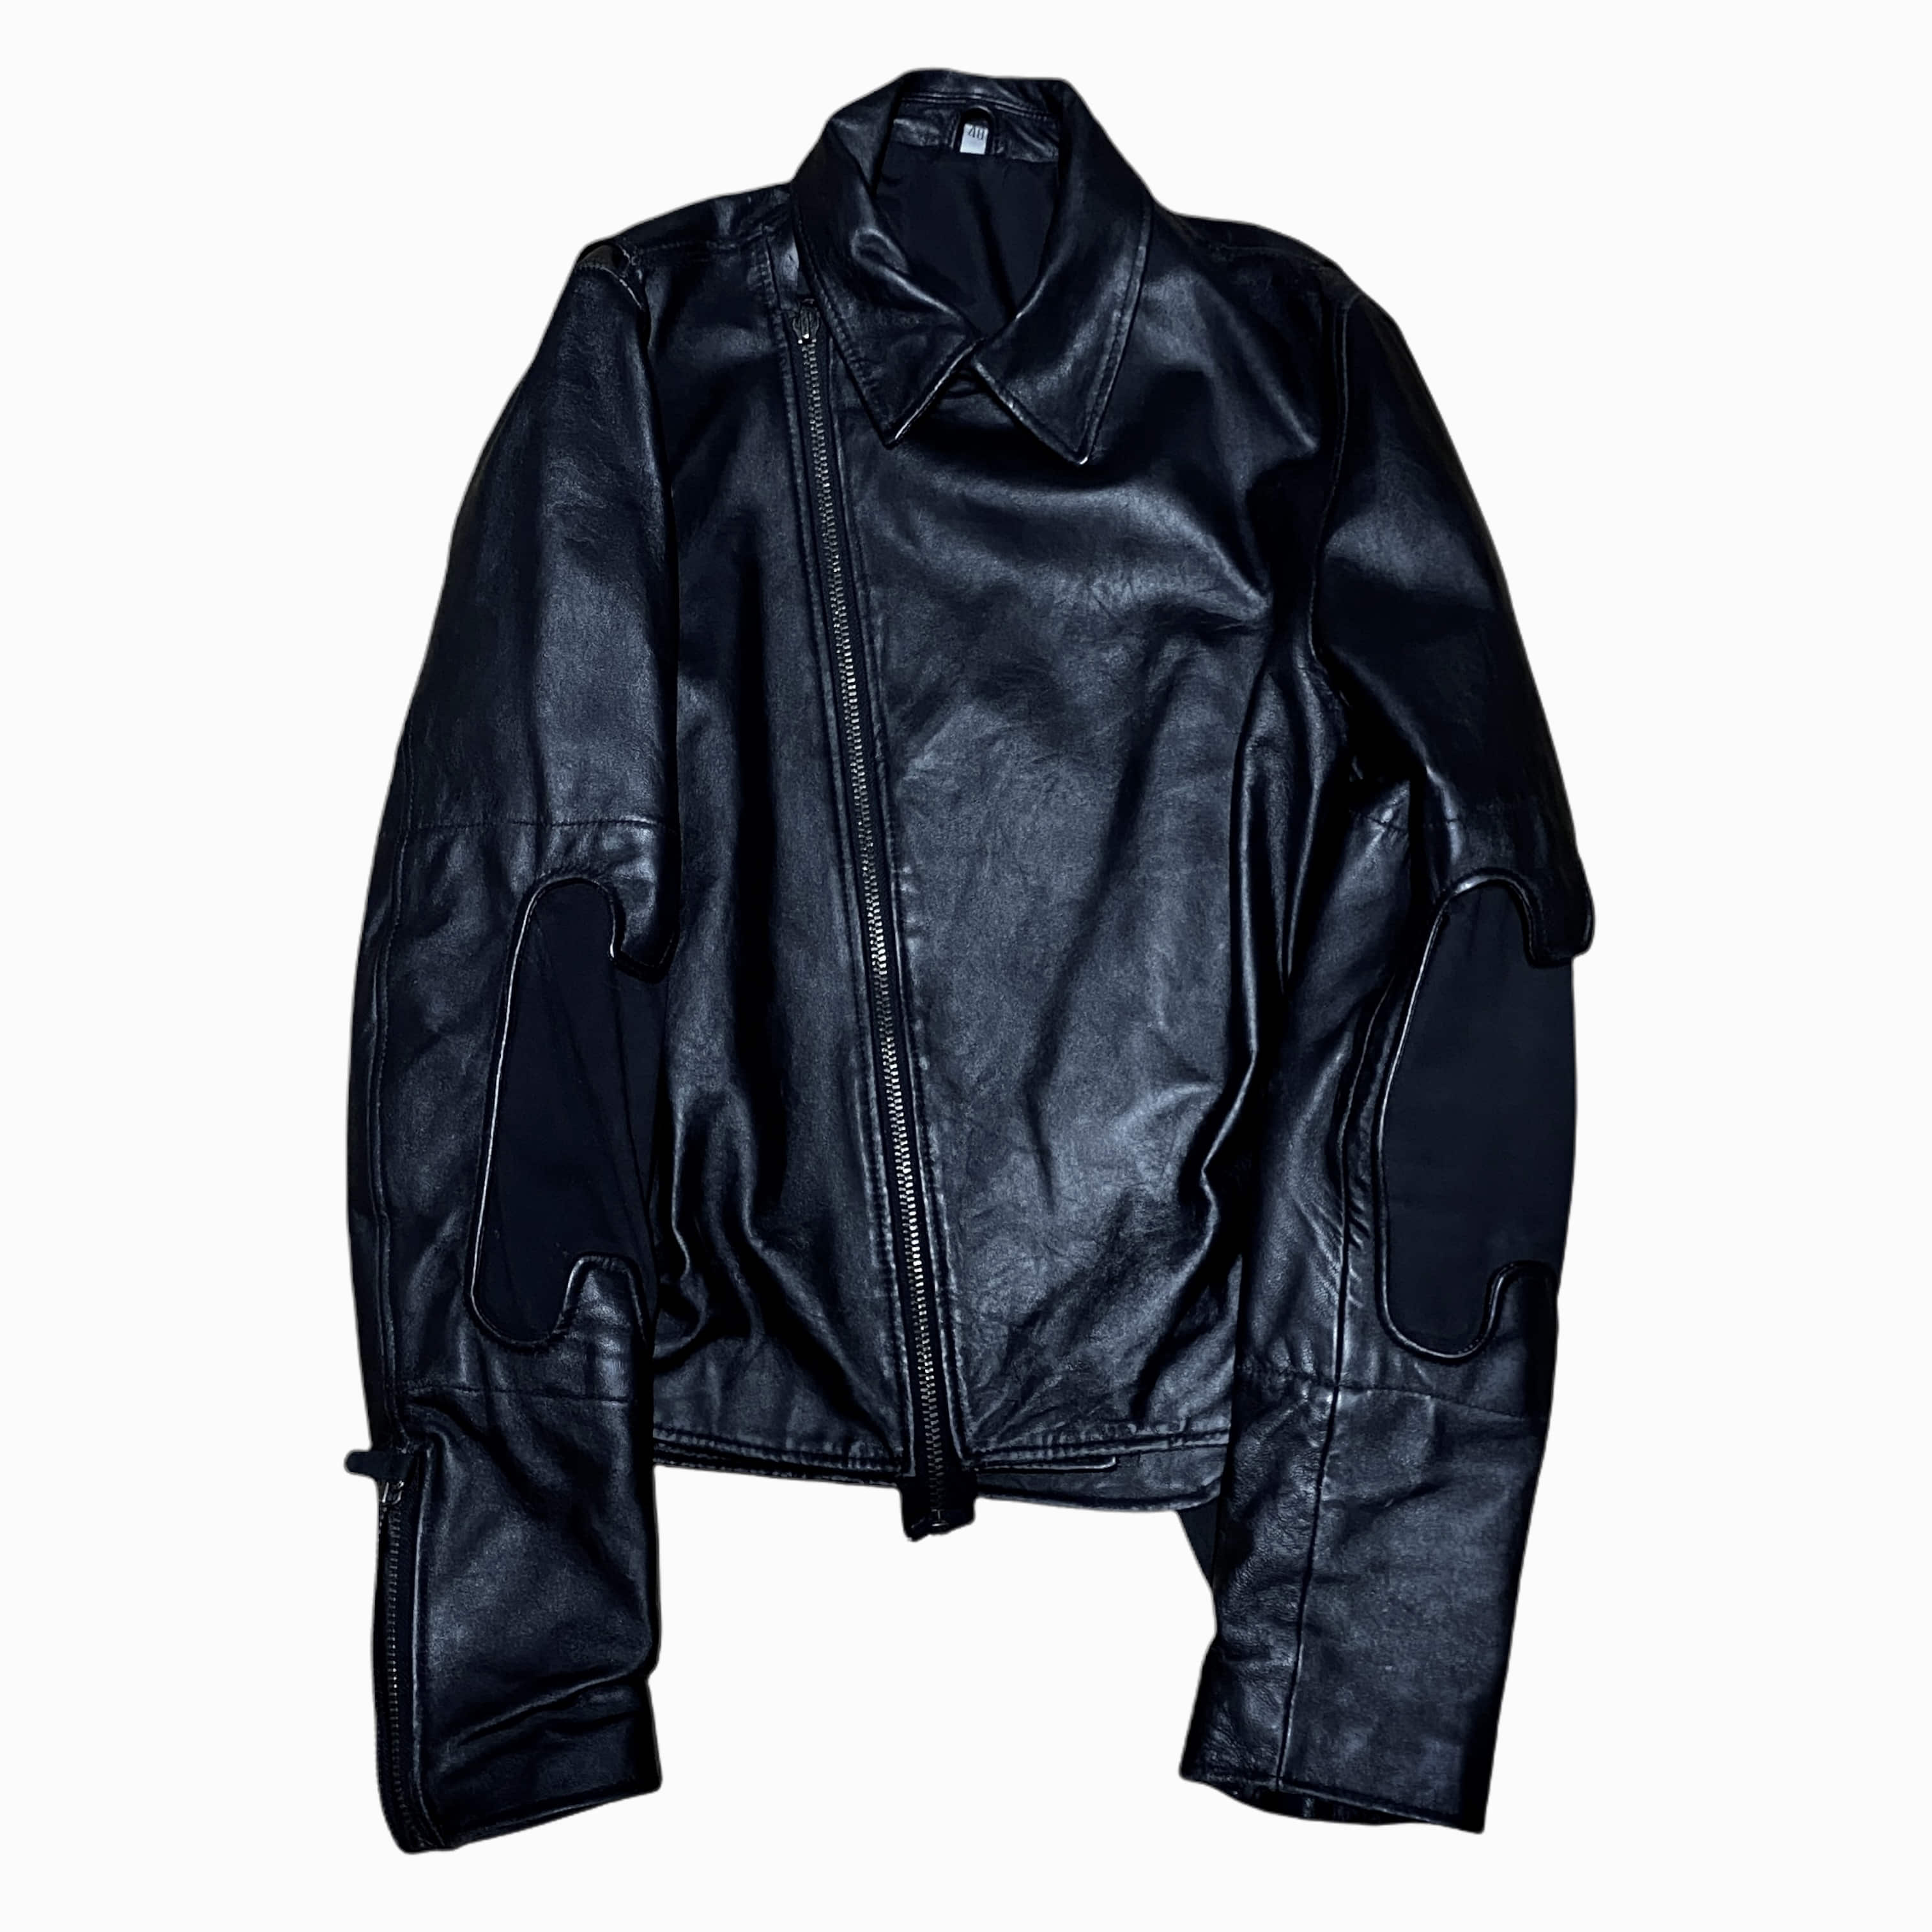 [Helmut Lang] Bondage Leather Jacket - Size 48